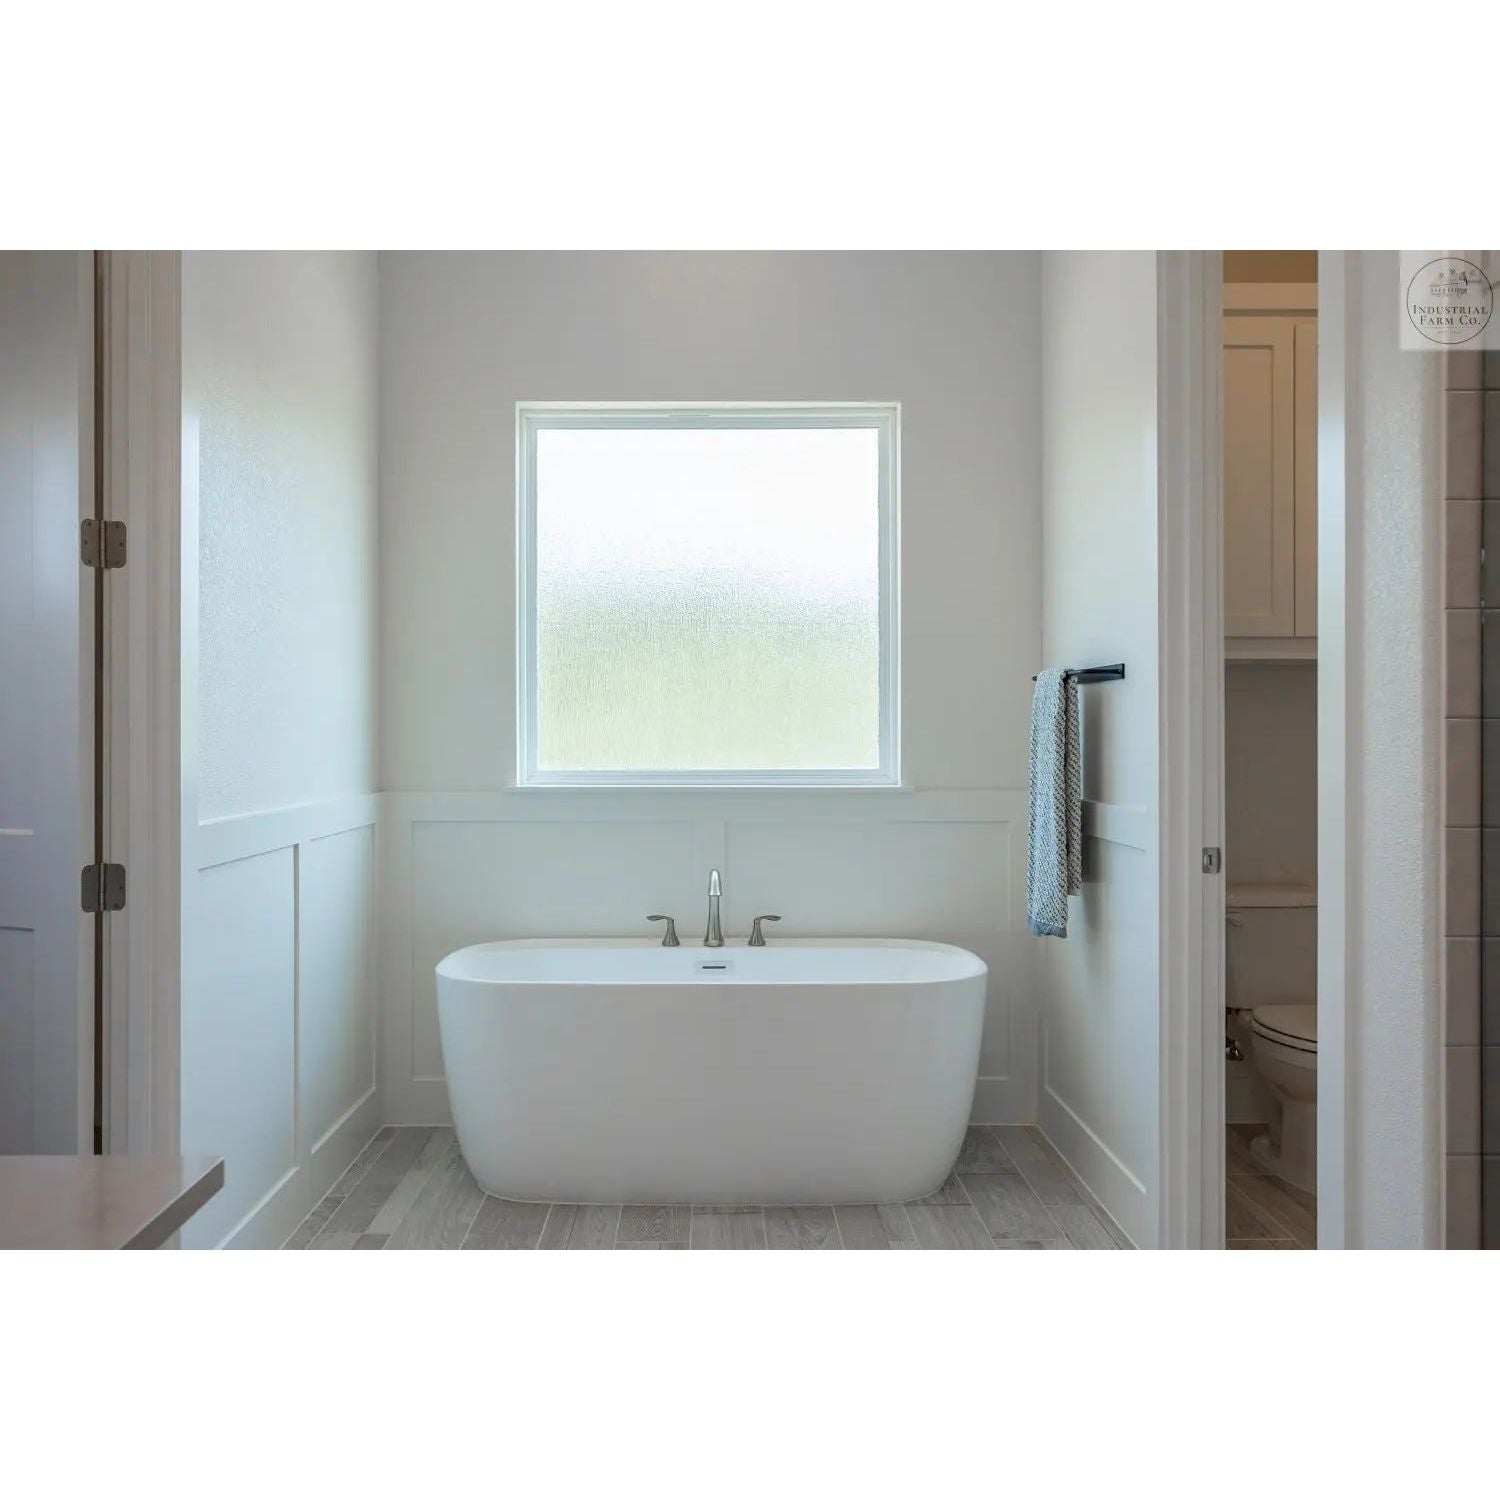 The Oswego Modern Bathroom Towel Bar Towel Bar 18" Wall Mount Length Finish Copper Powder Coat | Industrial Farm Co